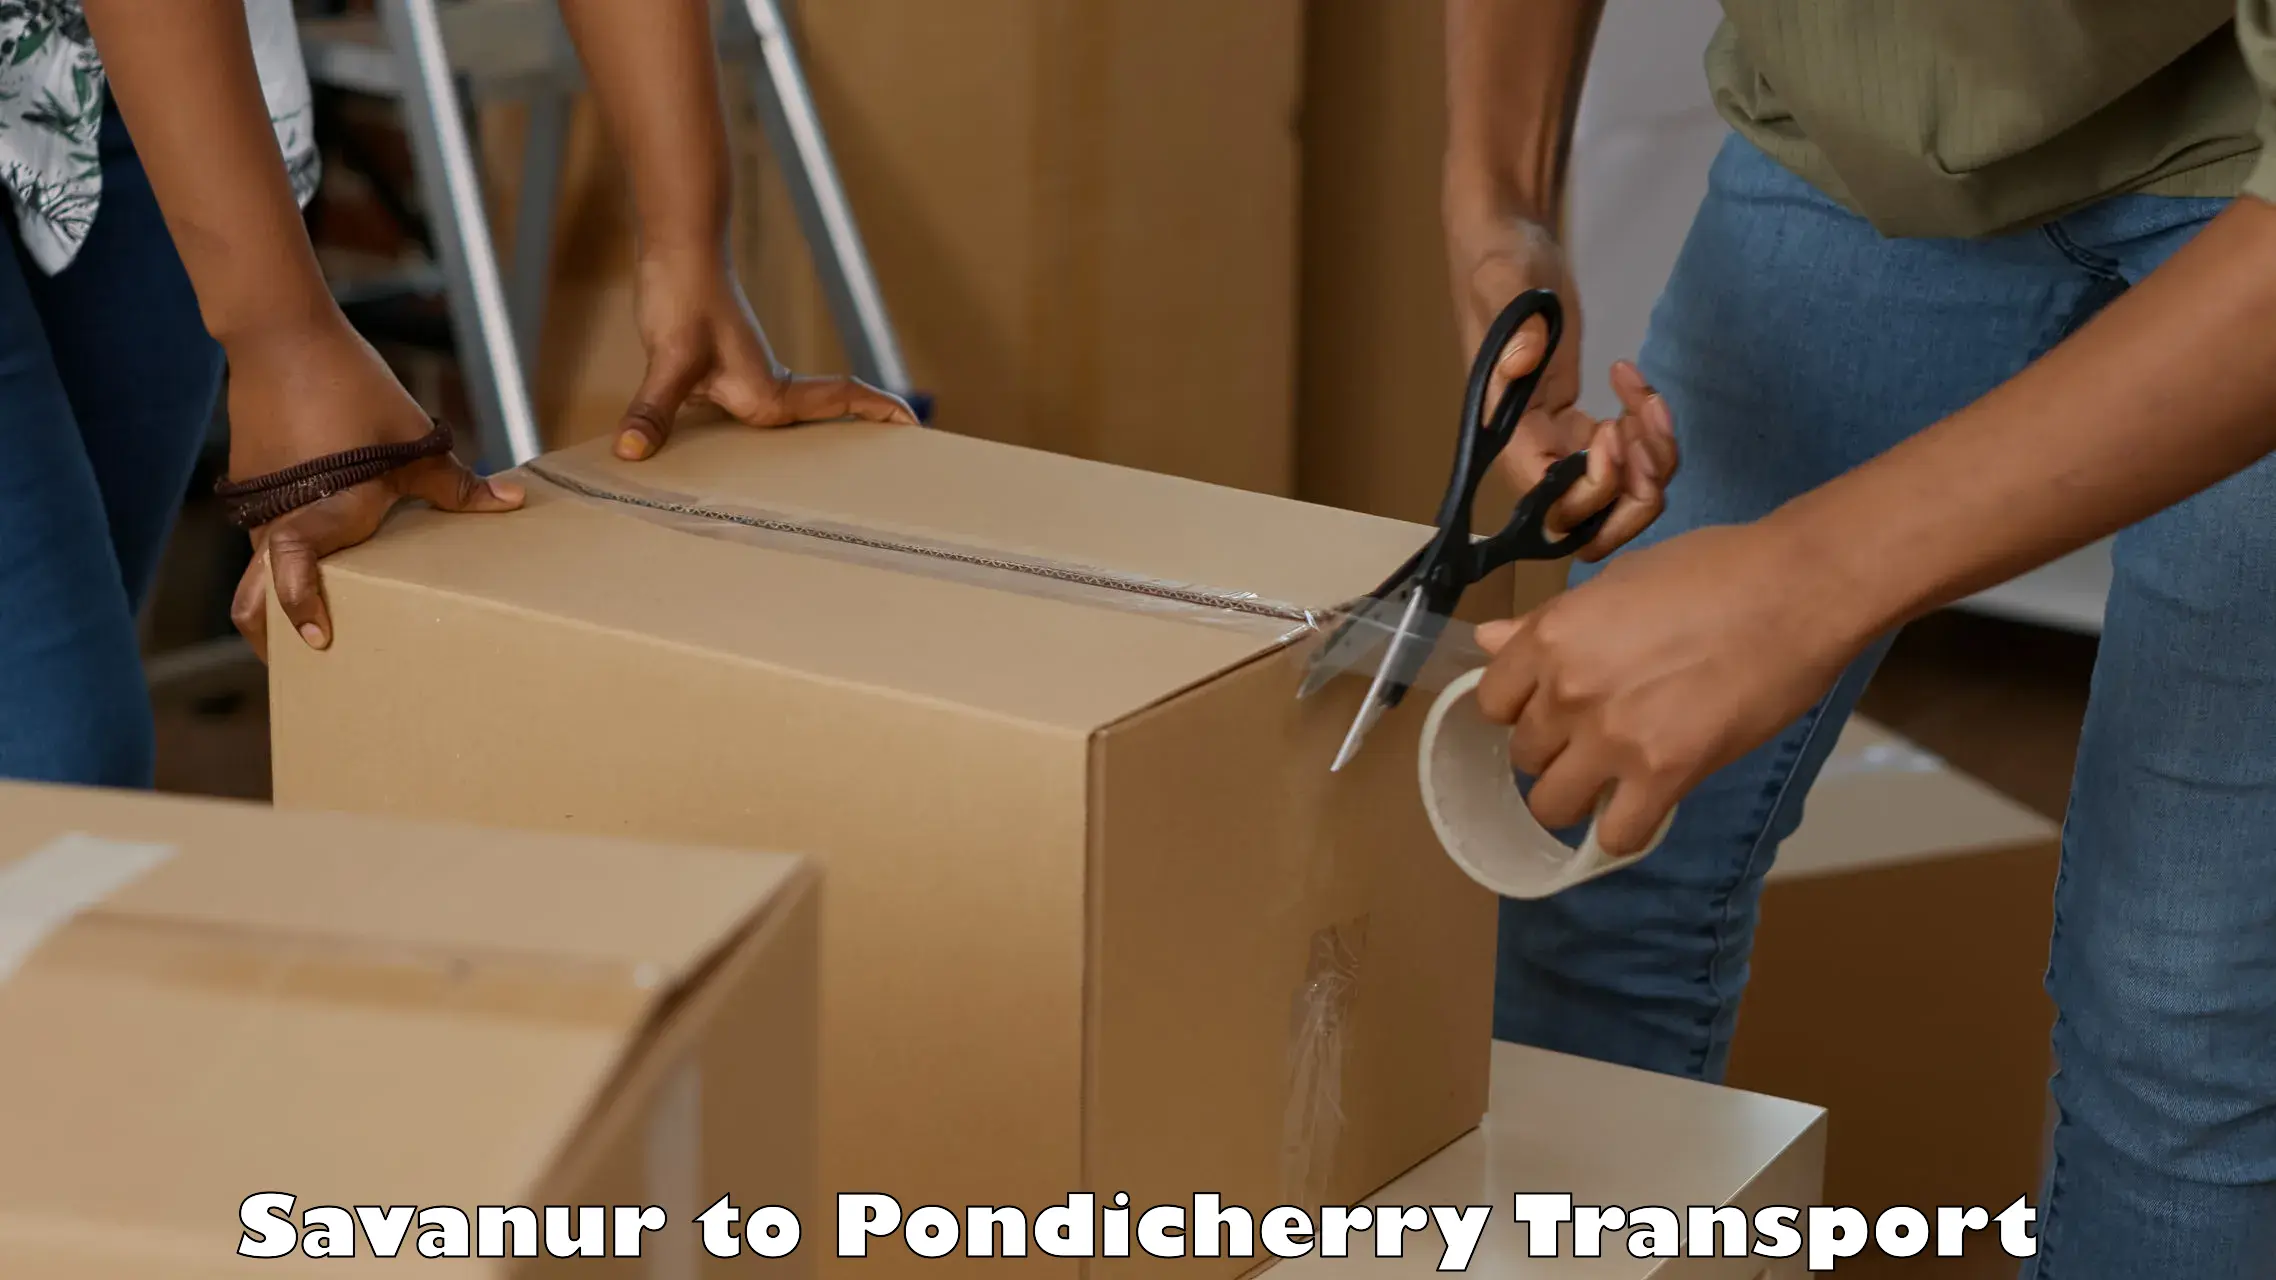 Online transport service Savanur to Pondicherry